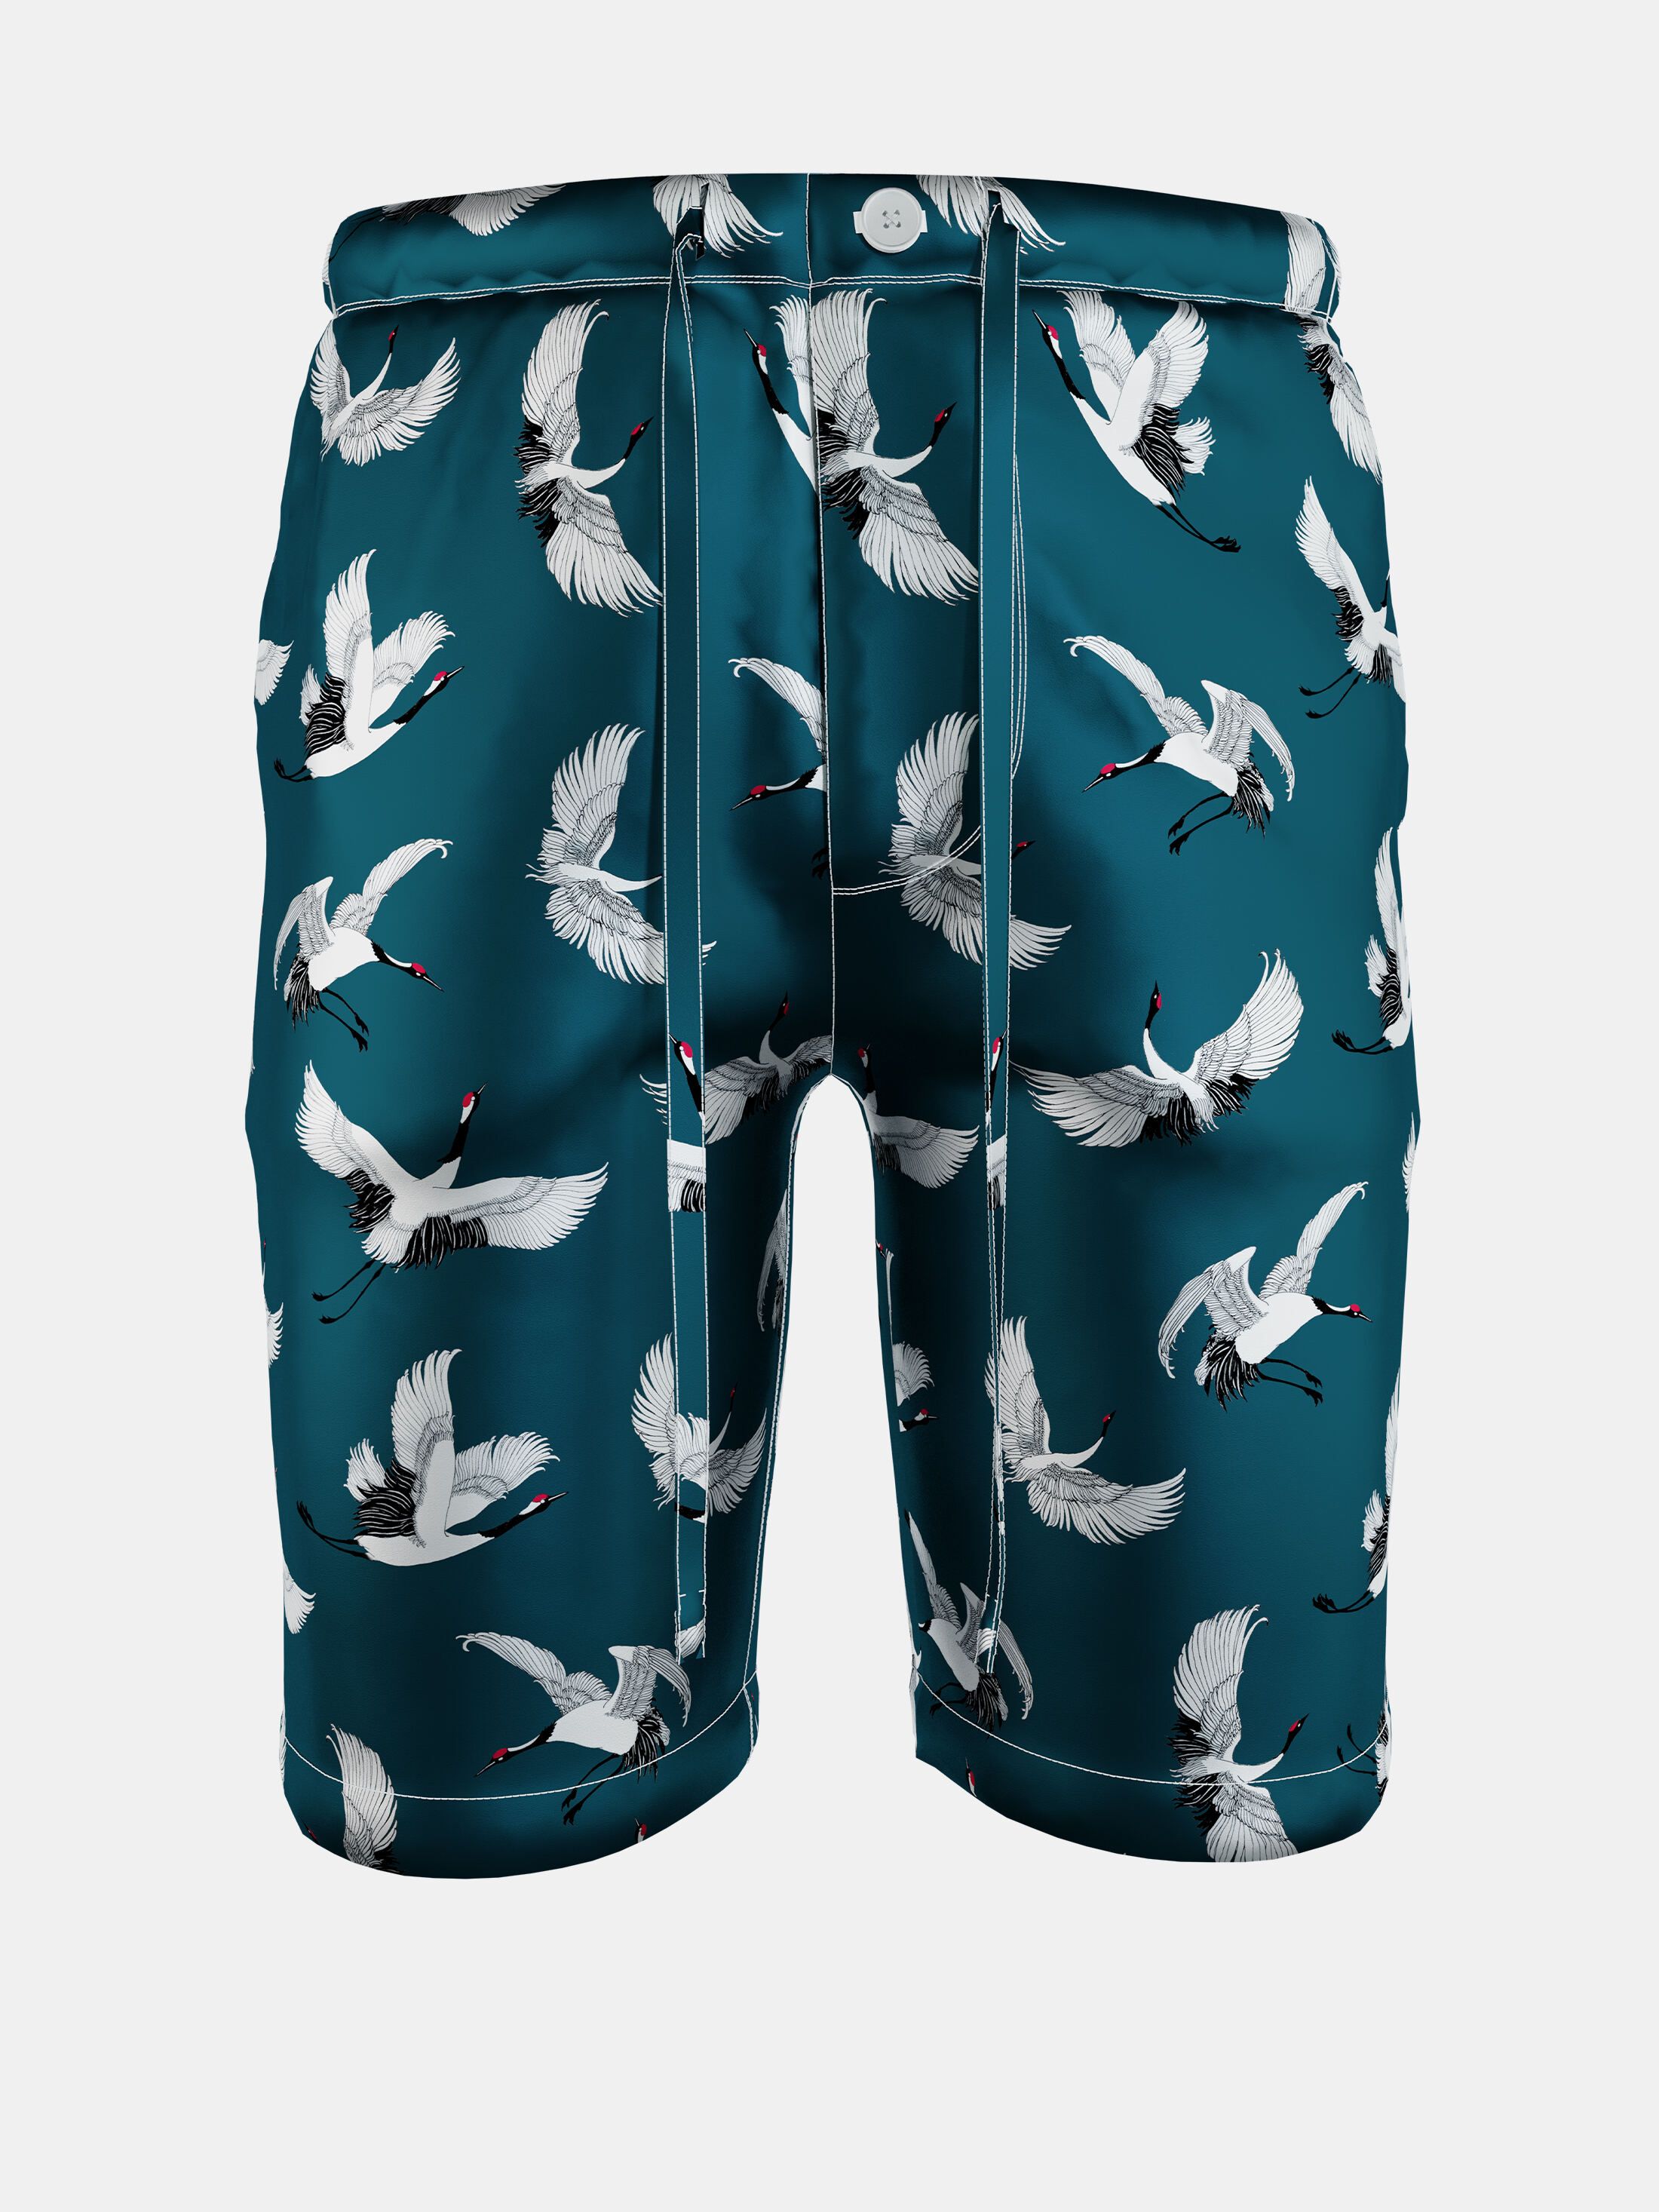 Design your own men's custom luxury silk pyjama set